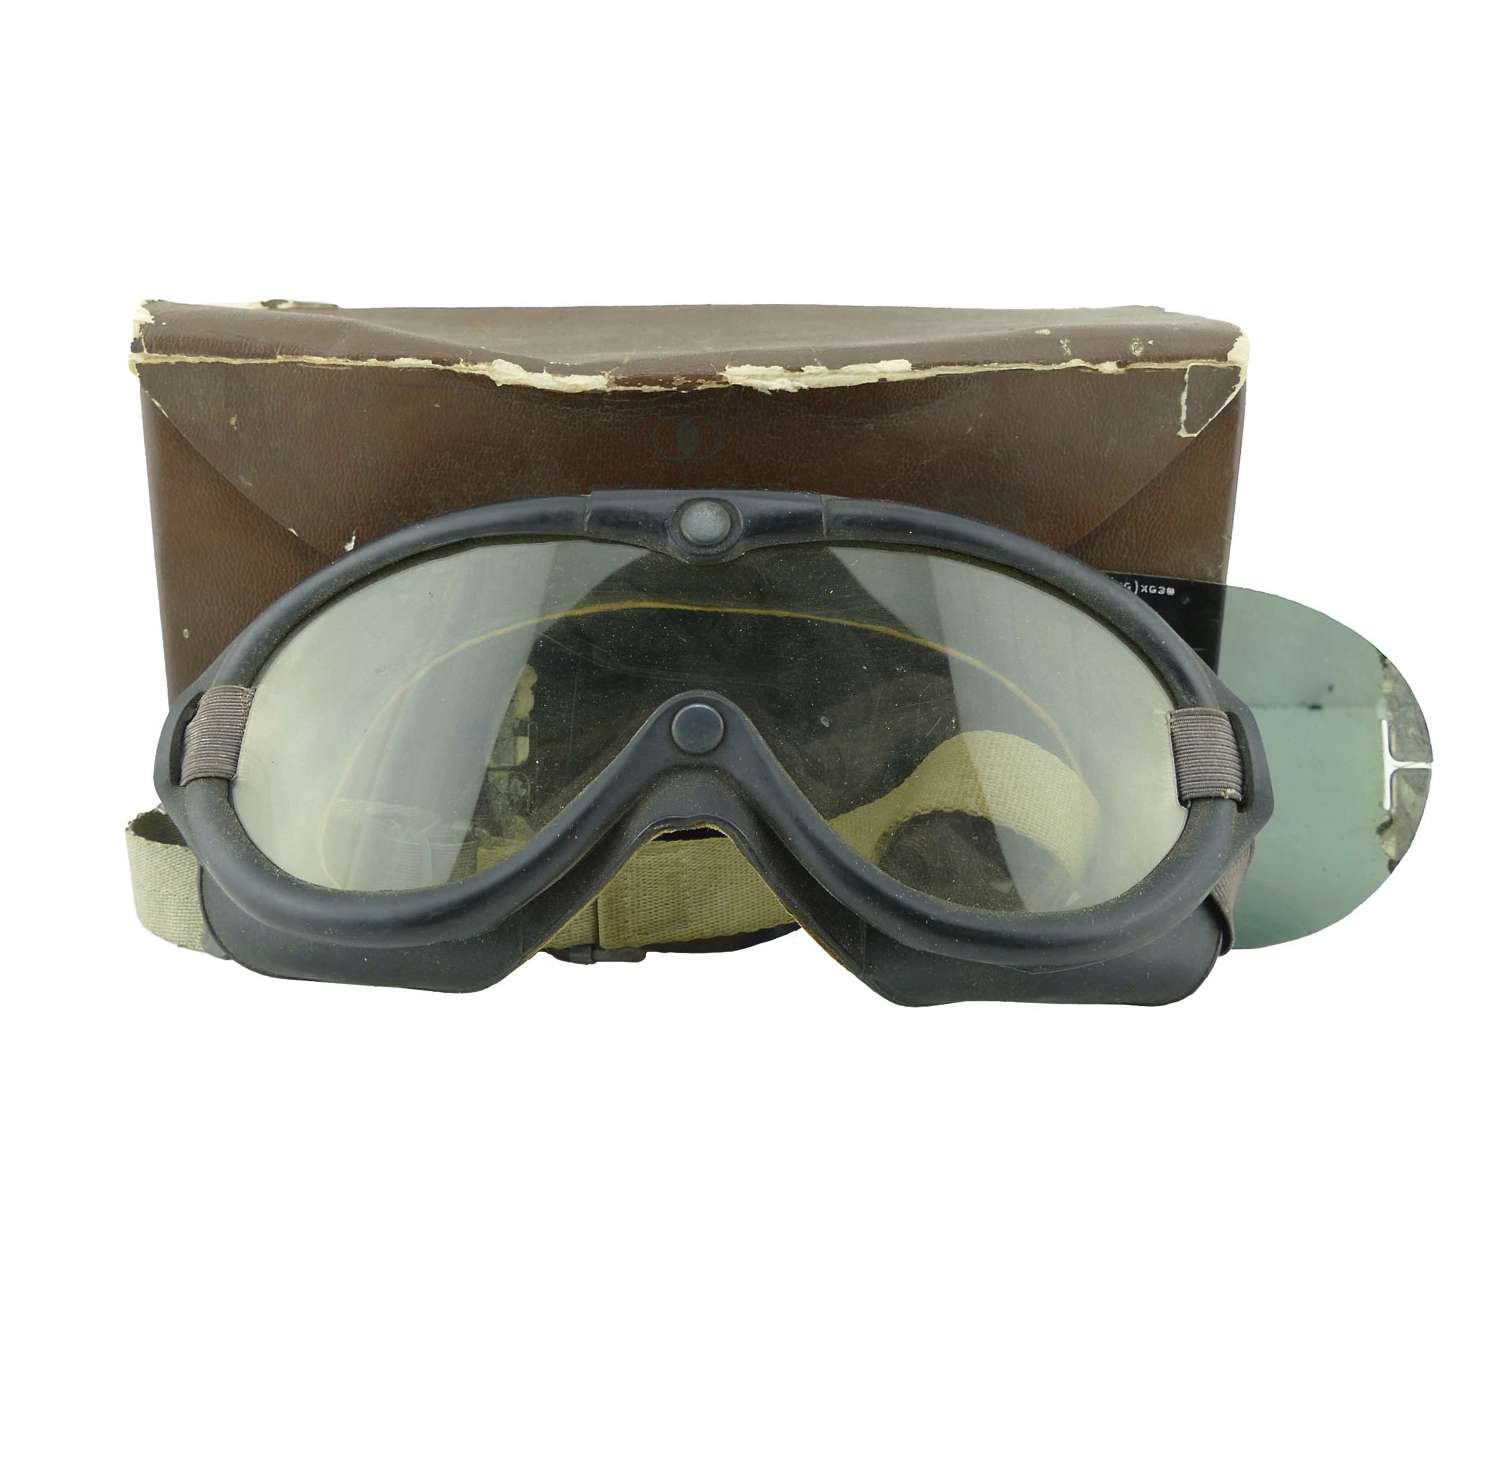 USAAF Aviation Goggle Kit No.1068